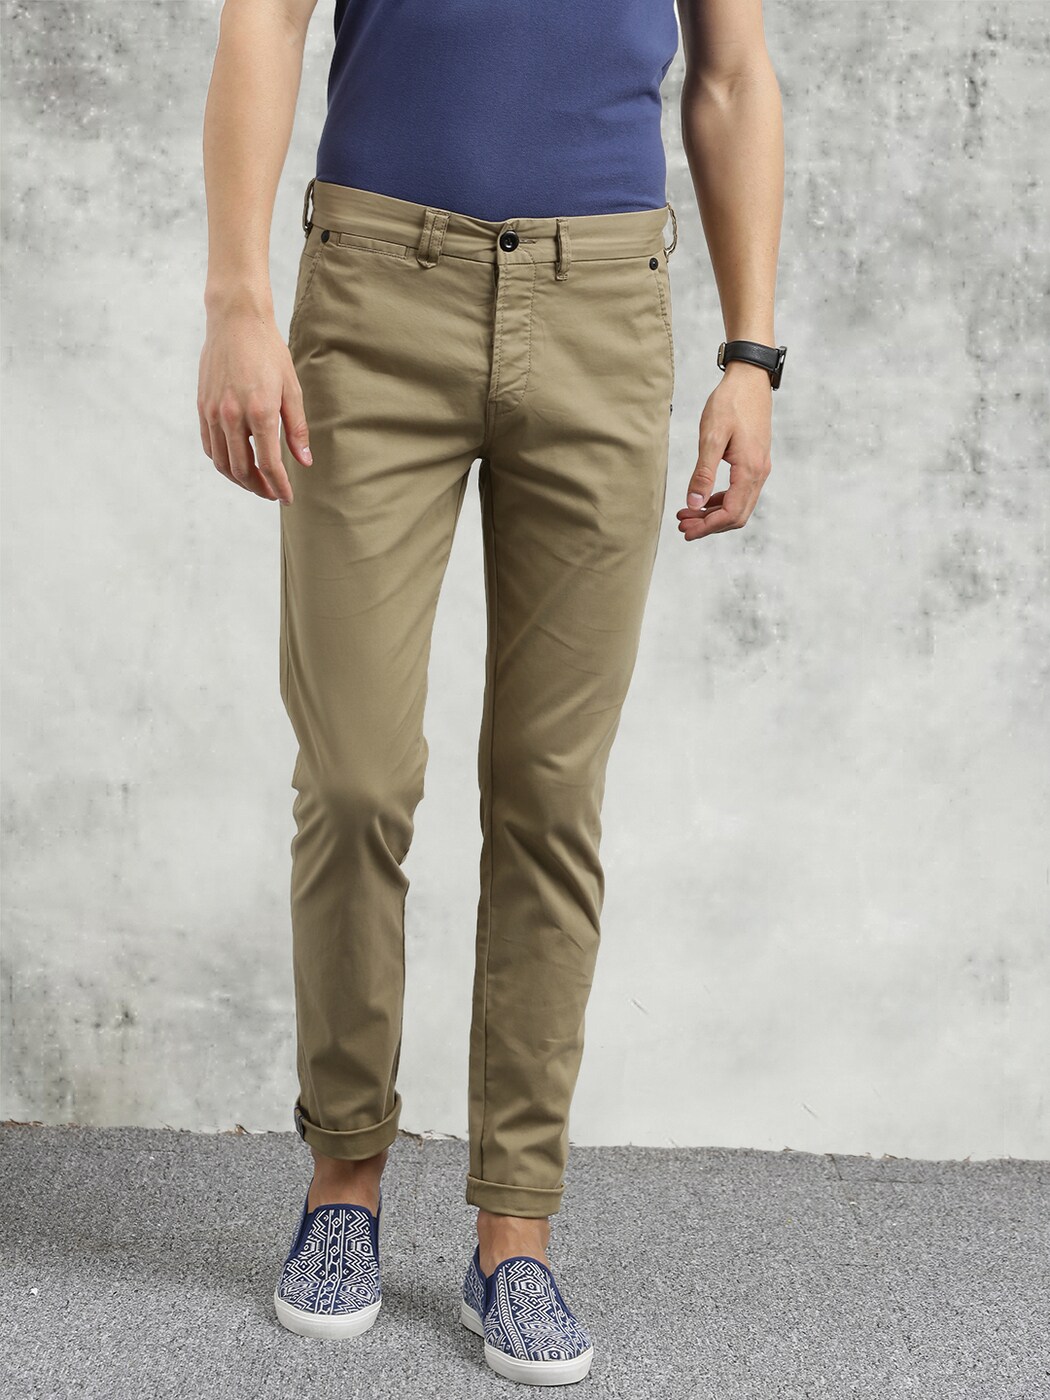 Buy Khaki Trousers & Pants for Men by BREAKBOUNCE Online